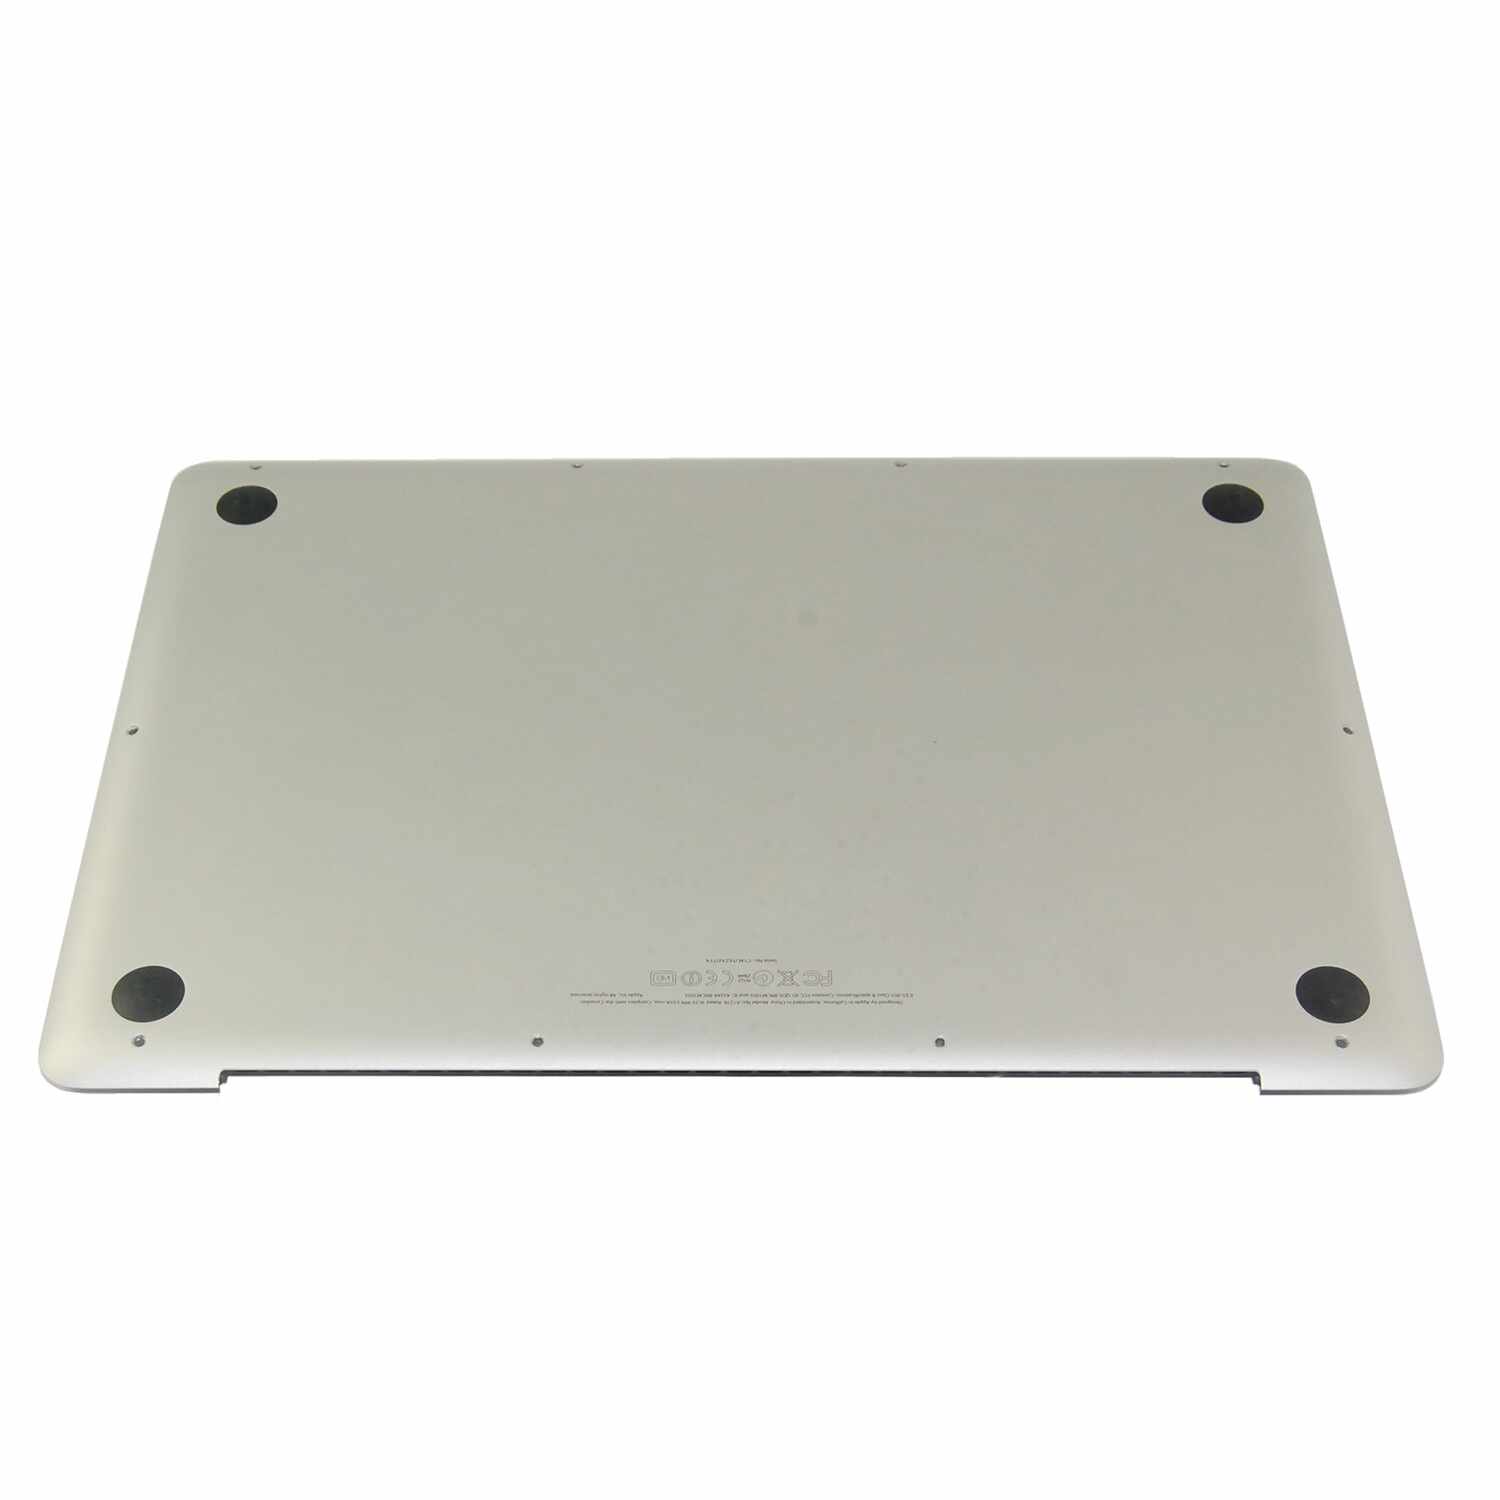 Capac bottom case Macbook Pro 13 inch A1278 2009-2012